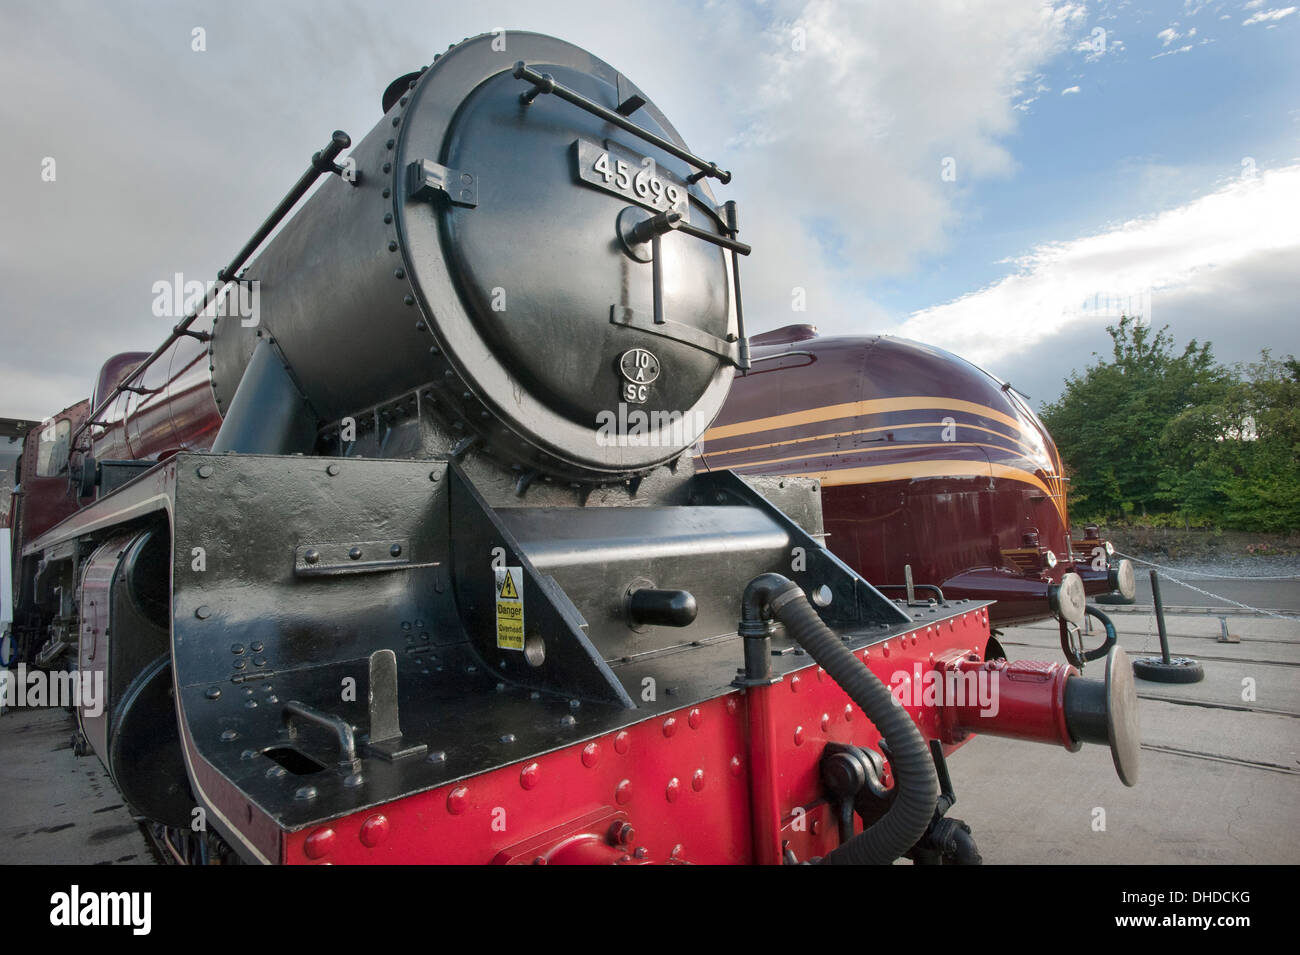 En el Museo Nacional del Ferrocarril, Shildon, dos locos de vapor, uno racionalizado y uno en su forma original. Foto de stock